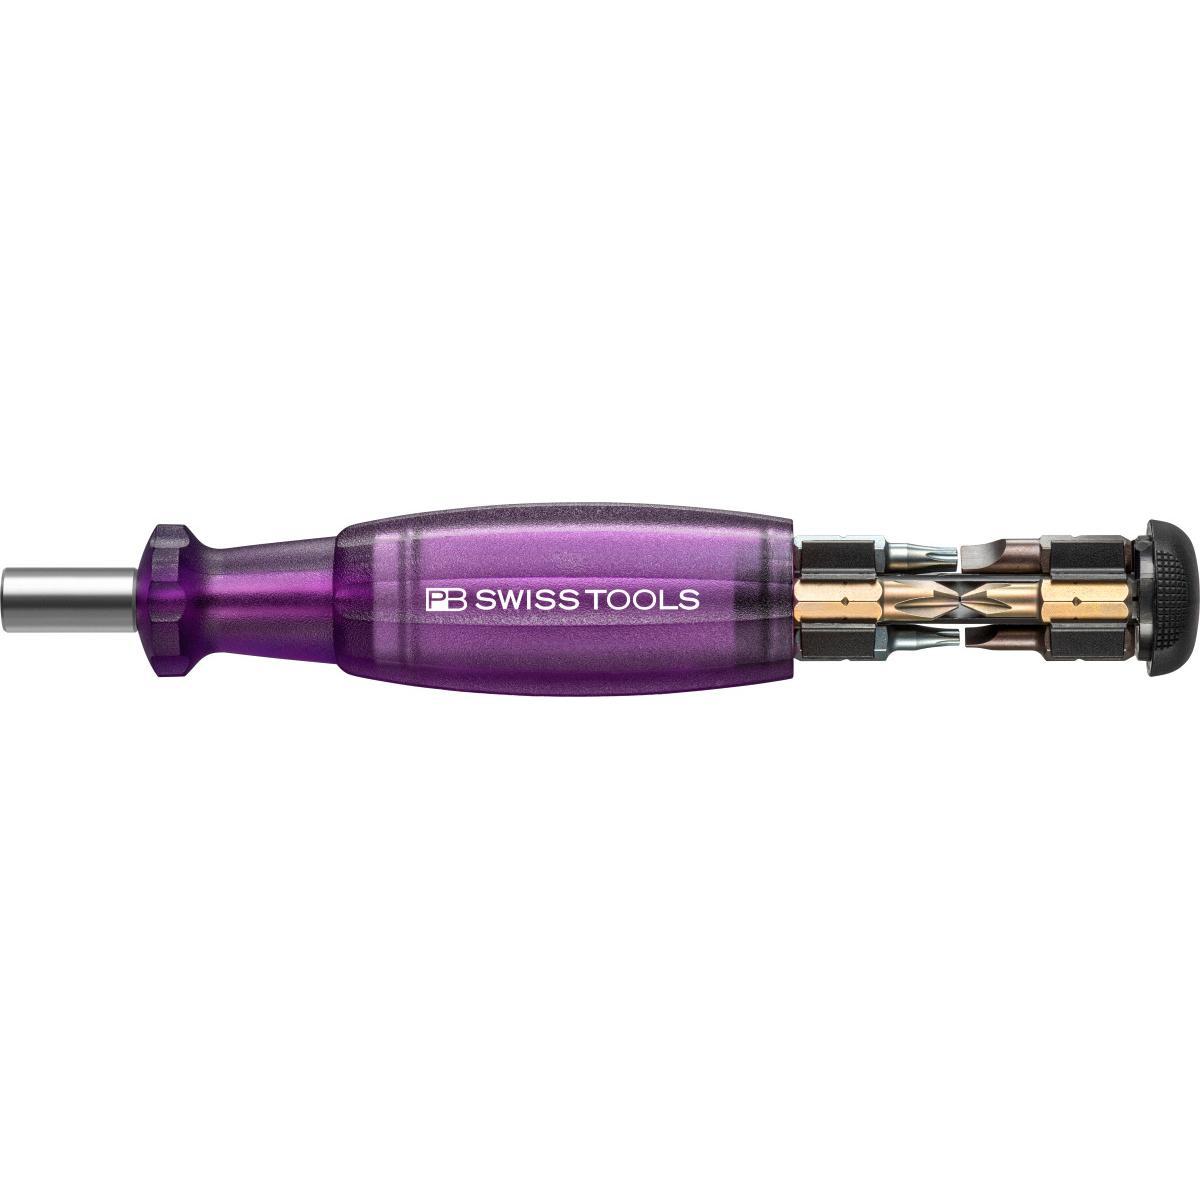 Tua Vít 8 Bits Màu Tím Độc Đáo Pb Swiss Tools Pb 6464,purple - Hàng Chính Hãng 100% từ Thụy Sĩ